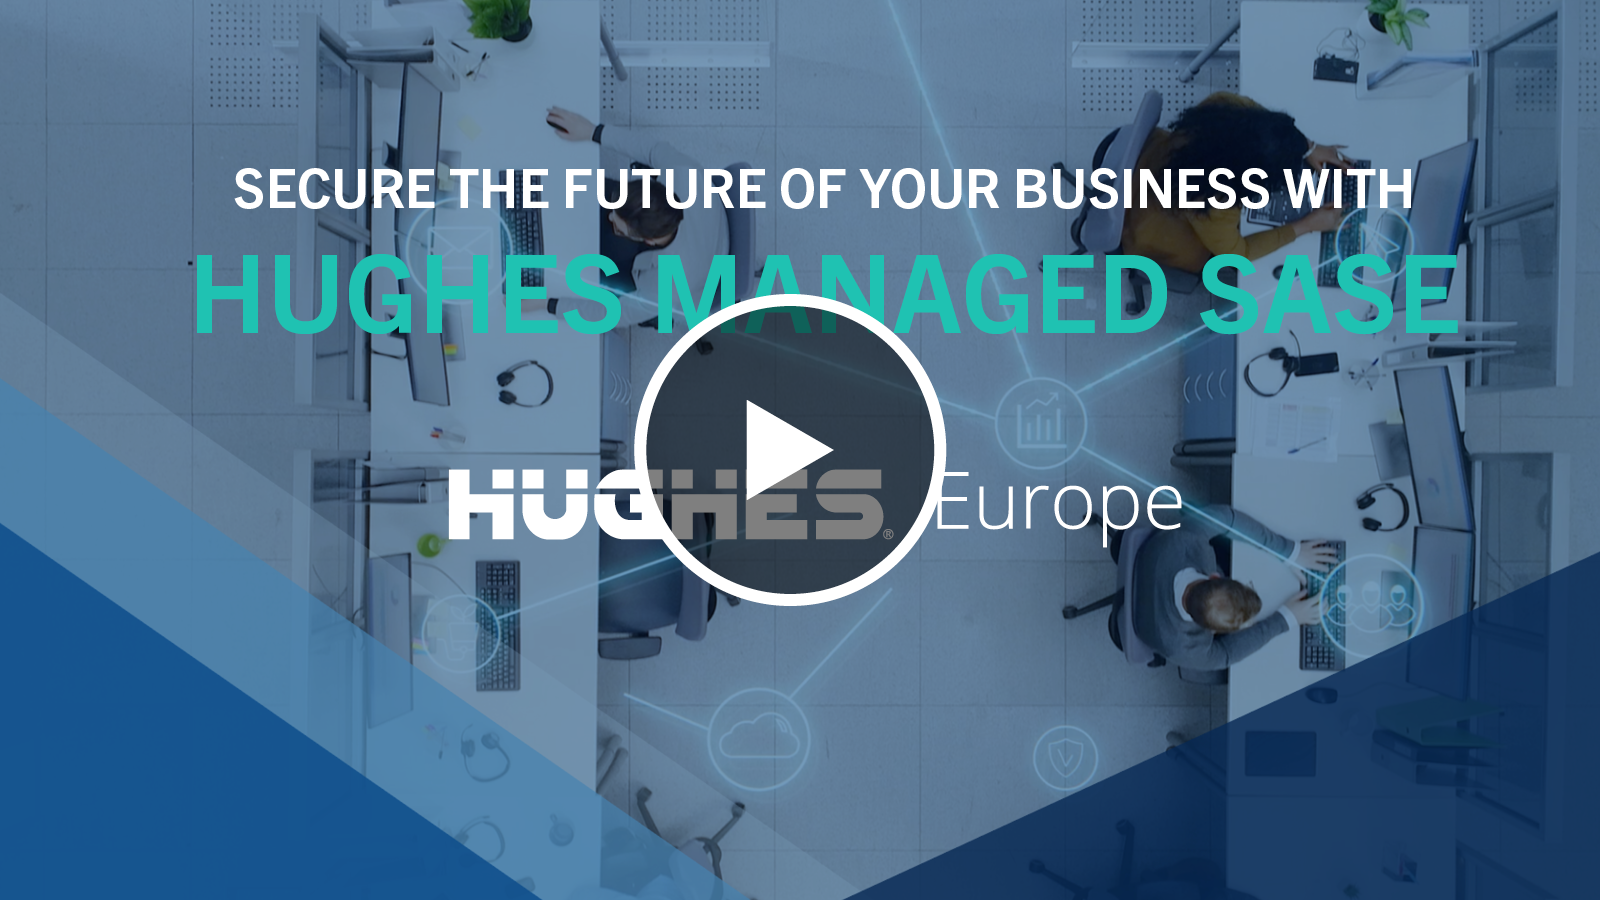 Hughes Europe Managed SASE